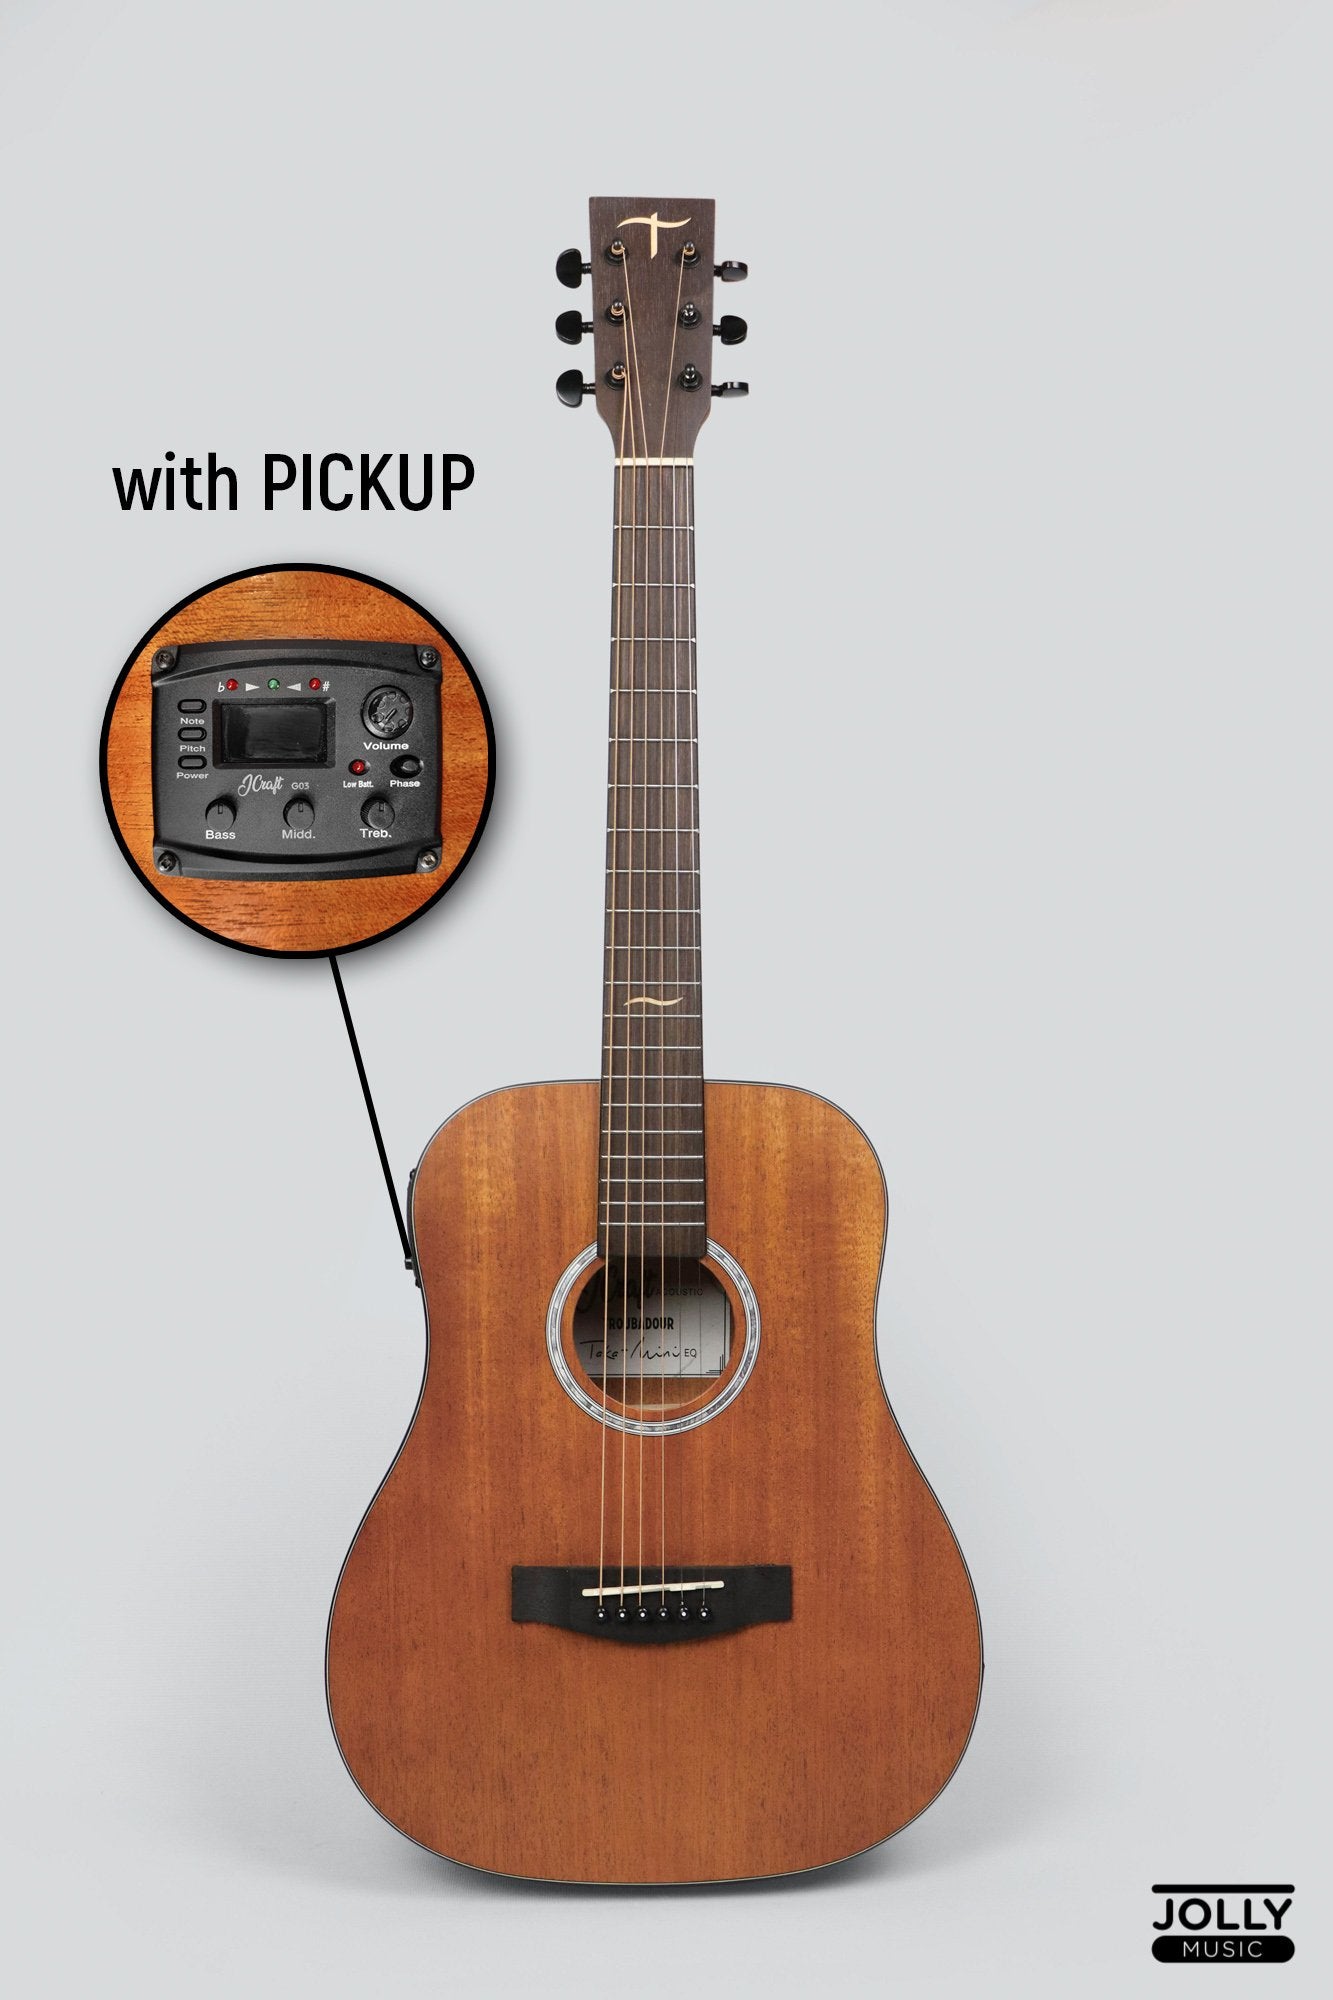 Shop Mahogany Acoustic Guitars Online